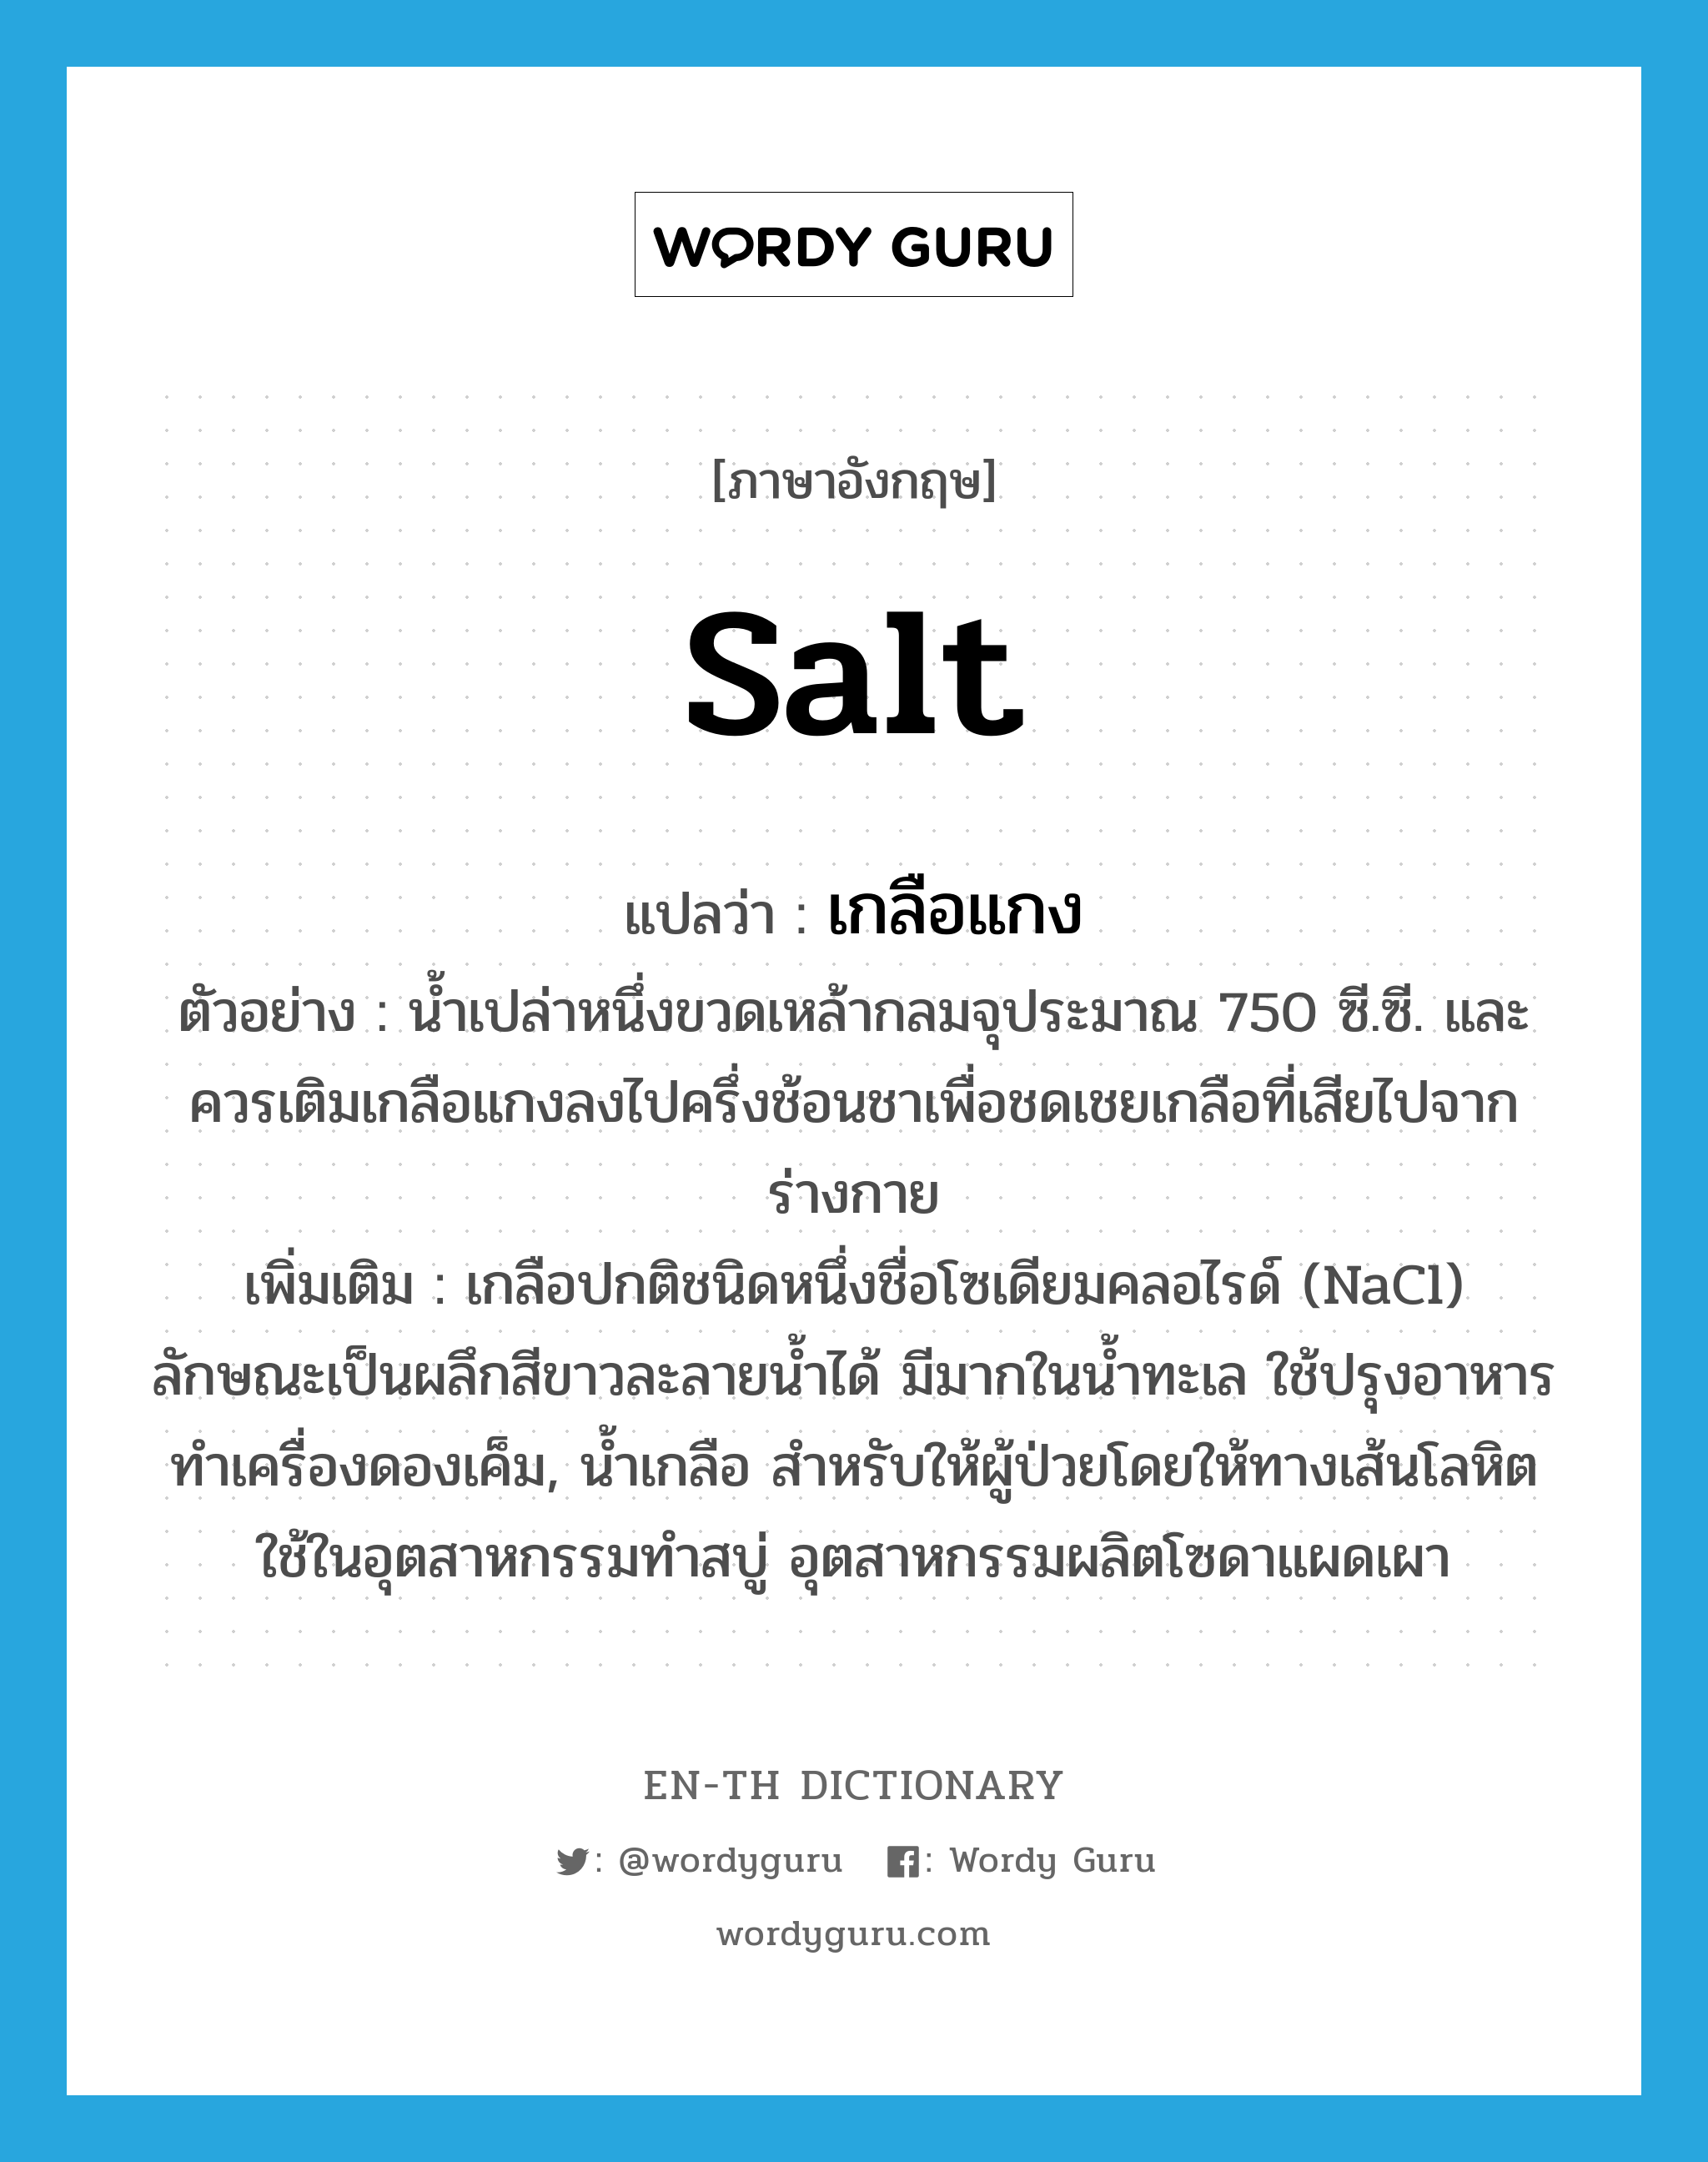 salt แปลว่า?, คำศัพท์ภาษาอังกฤษ salt แปลว่า เกลือแกง ประเภท N ตัวอย่าง น้ำเปล่าหนึ่งขวดเหล้ากลมจุประมาณ 750 ซี.ซี. และควรเติมเกลือแกงลงไปครึ่งช้อนชาเพื่อชดเชยเกลือที่เสียไปจากร่างกาย เพิ่มเติม เกลือปกติชนิดหนึ่งชื่อโซเดียมคลอไรด์ (NaCl) ลักษณะเป็นผลึกสีขาวละลายน้ำได้ มีมากในน้ำทะเล ใช้ปรุงอาหาร ทำเครื่องดองเค็ม, น้ำเกลือ สำหรับให้ผู้ป่วยโดยให้ทางเส้นโลหิต ใช้ในอุตสาหกรรมทำสบู่ อุตสาหกรรมผลิตโซดาแผดเผา หมวด N